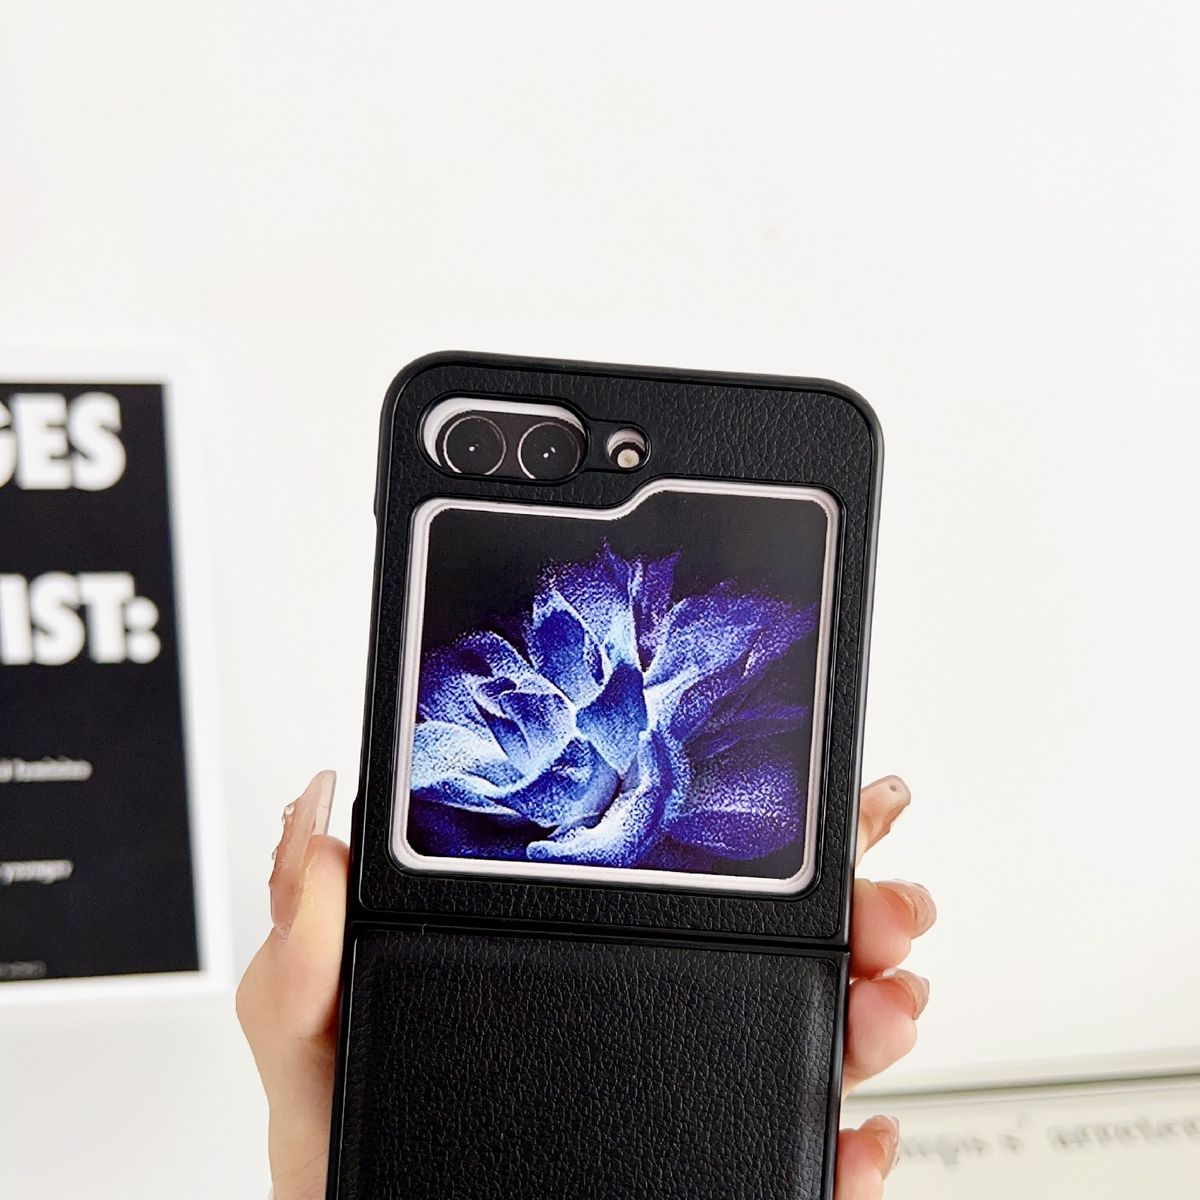 Samsung, Backcover, KÖNIG Z 5G, Flip5 Blau Case, DESIGN Galaxy